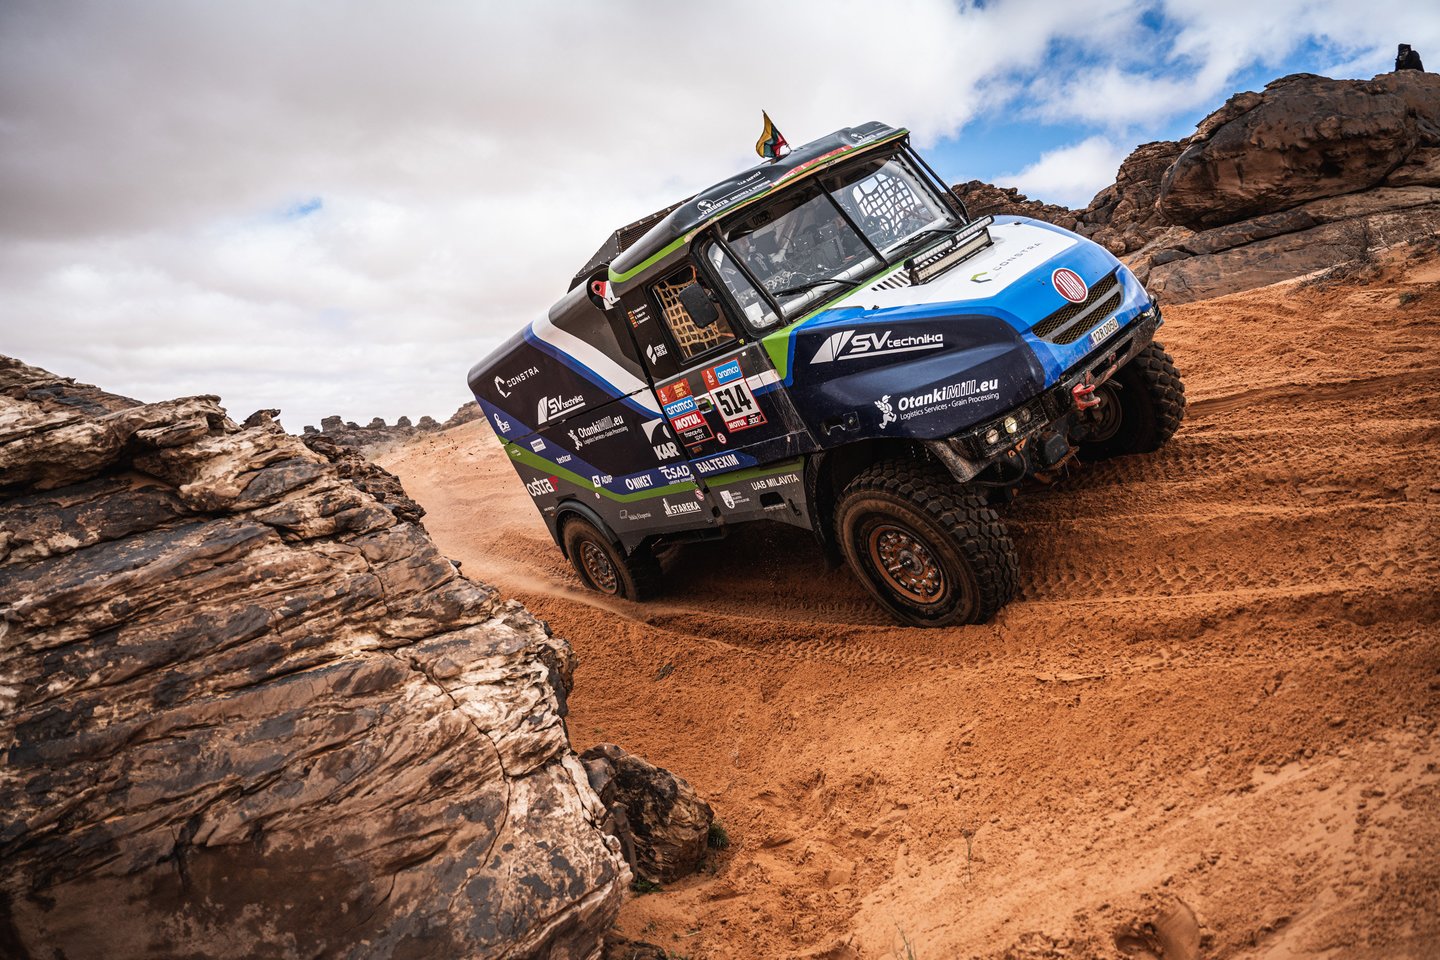 Penktoji Dakaro ralio diena sunkvežimių įskaitoje lenktyniaujančiai „Constra Racing“ komandai buvo itin permaininga.<br>„M.Macik team“ nuotr.